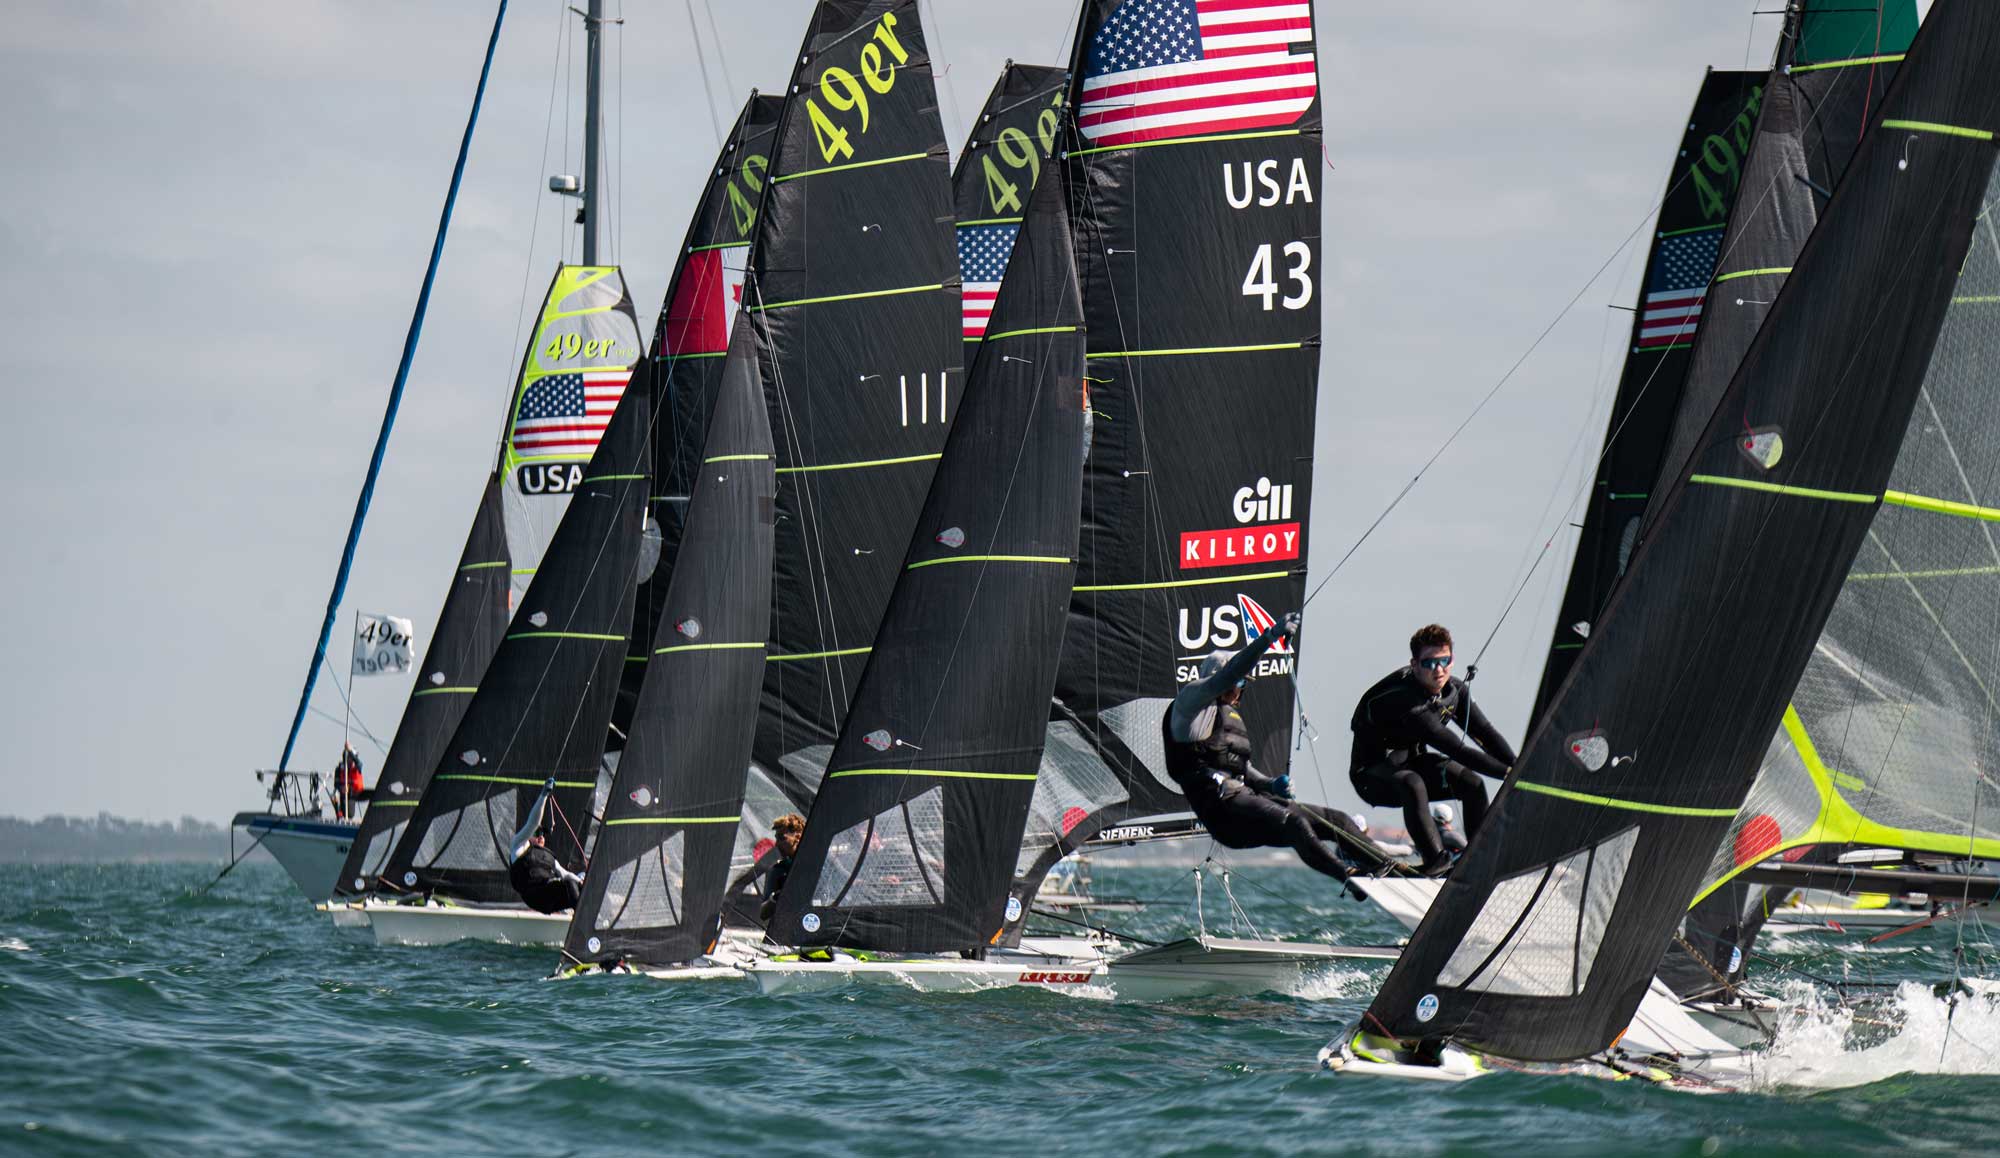 Atleții echipei de navigație din SUA au obținut rezultate bune în Clearwater